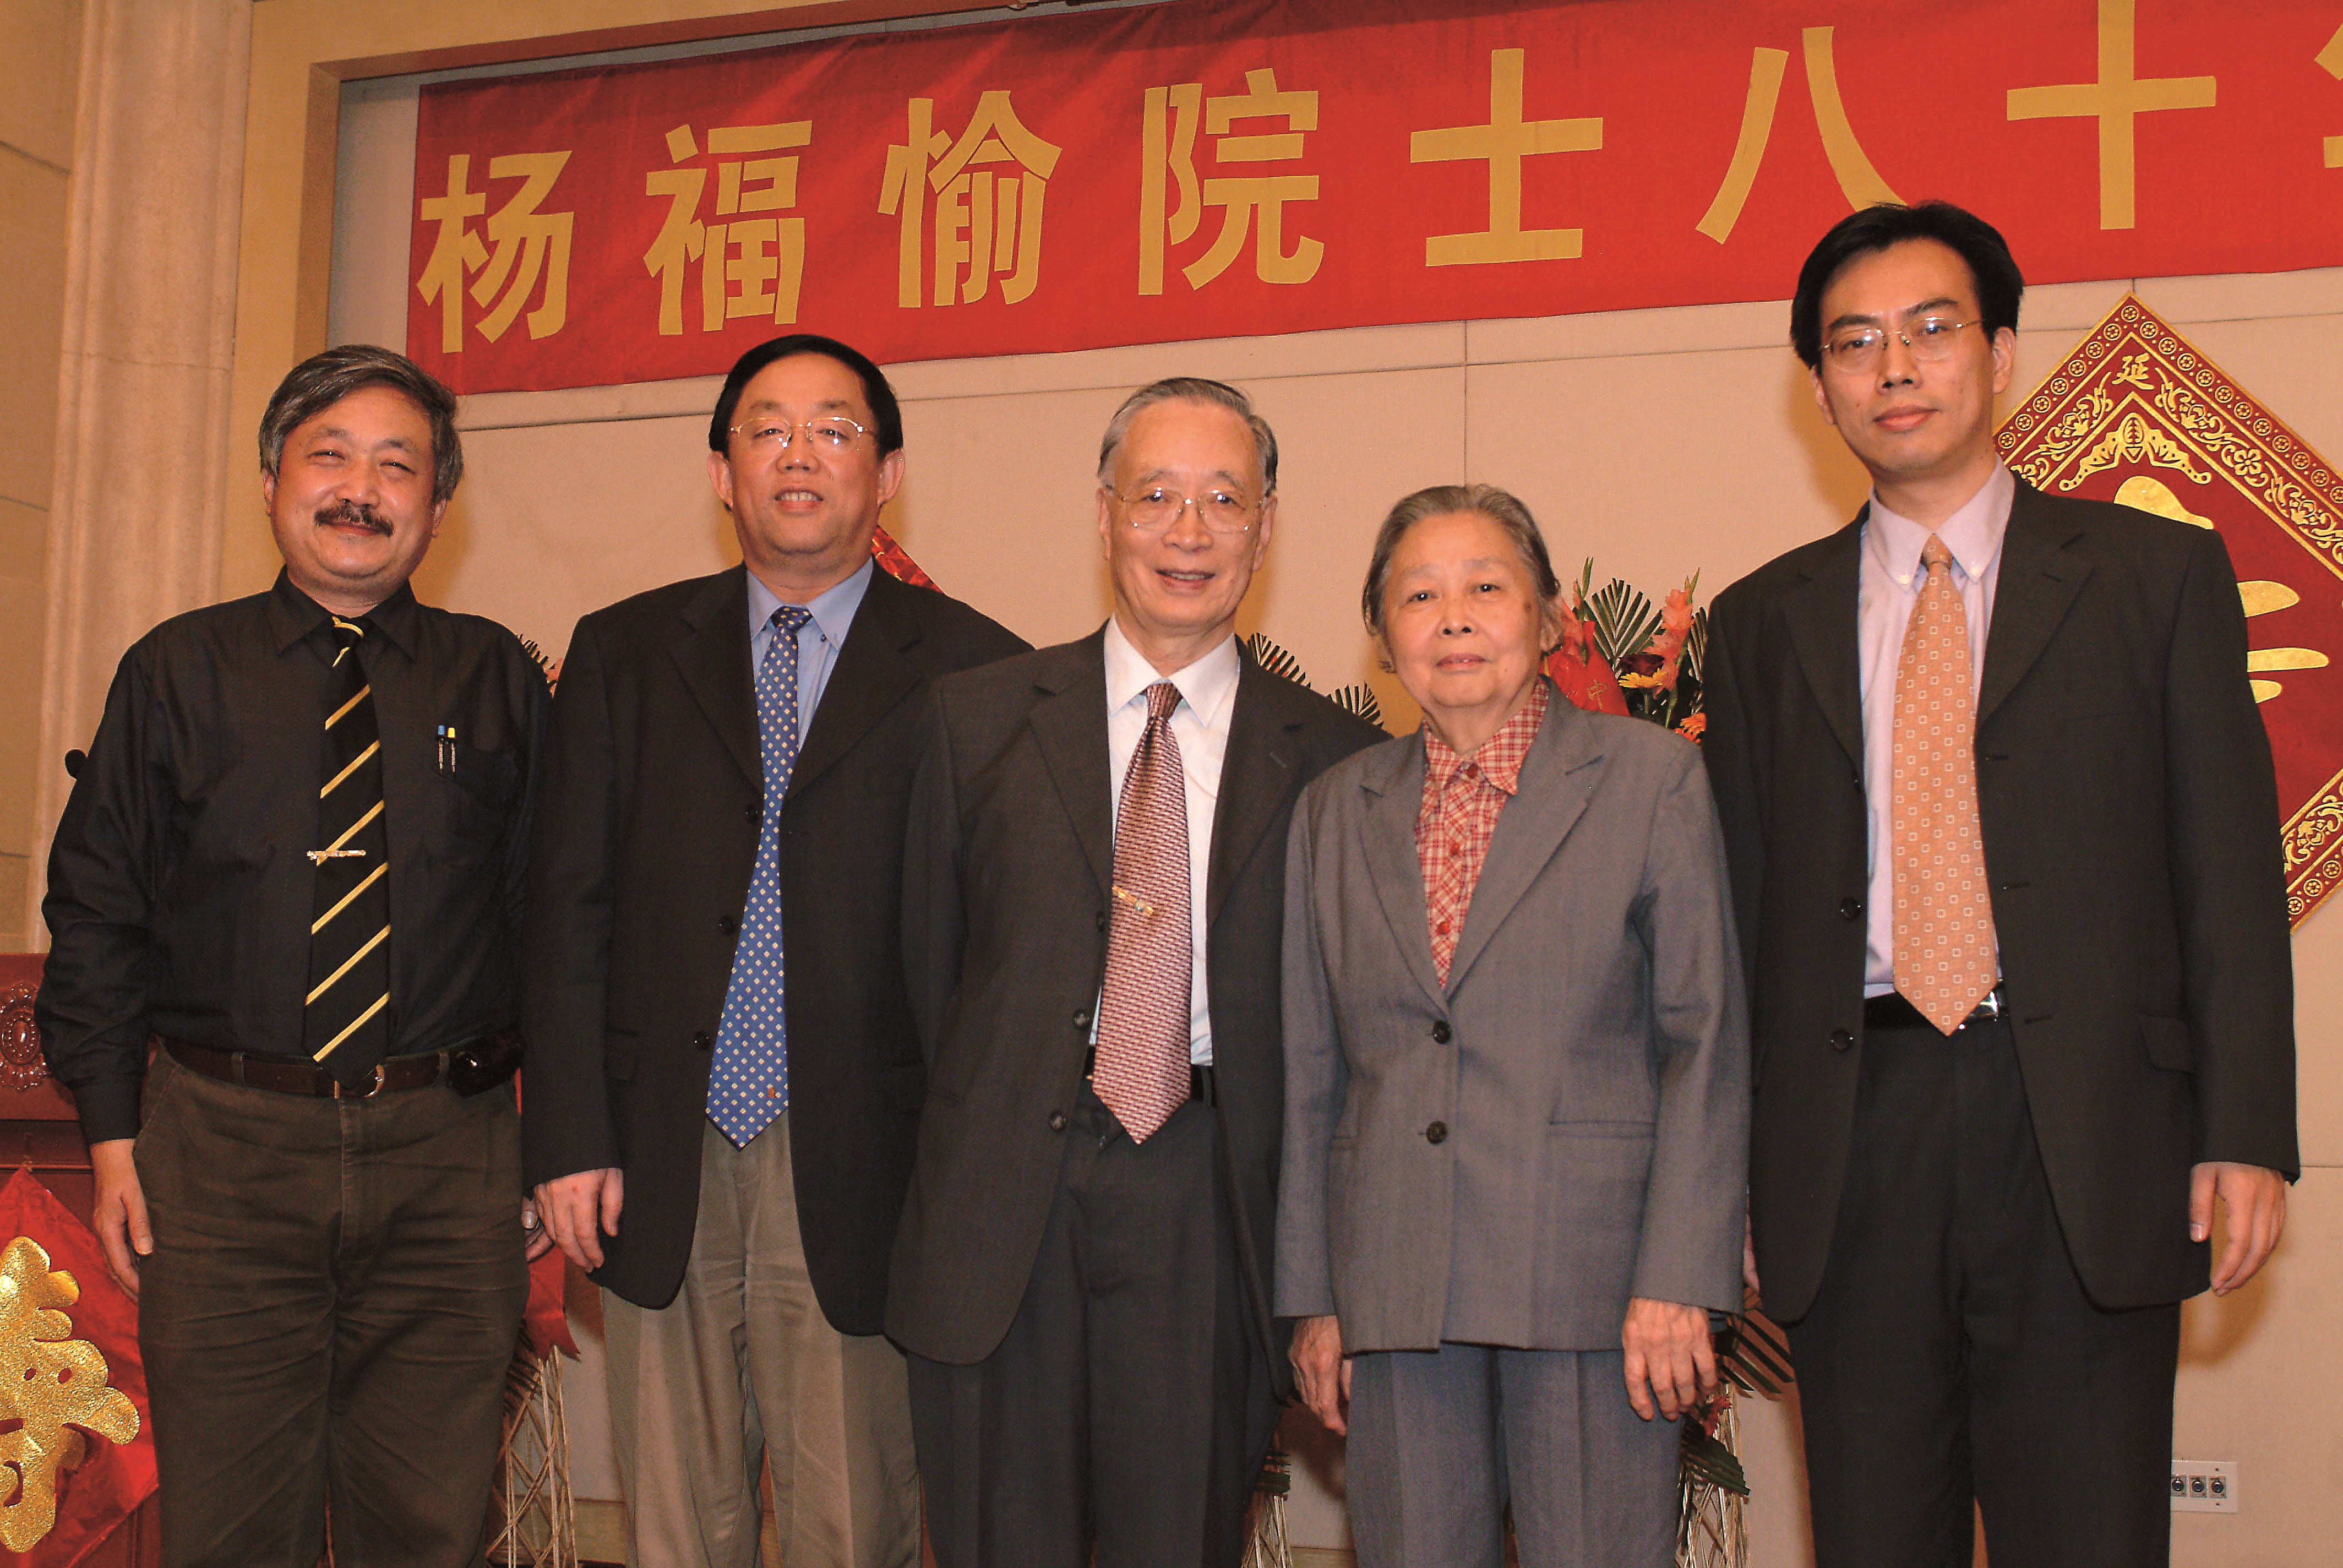 会上杨福愉夫妇与所领导杨星科(左2)、徐涛(右1)、赫荣乔(左1)合影